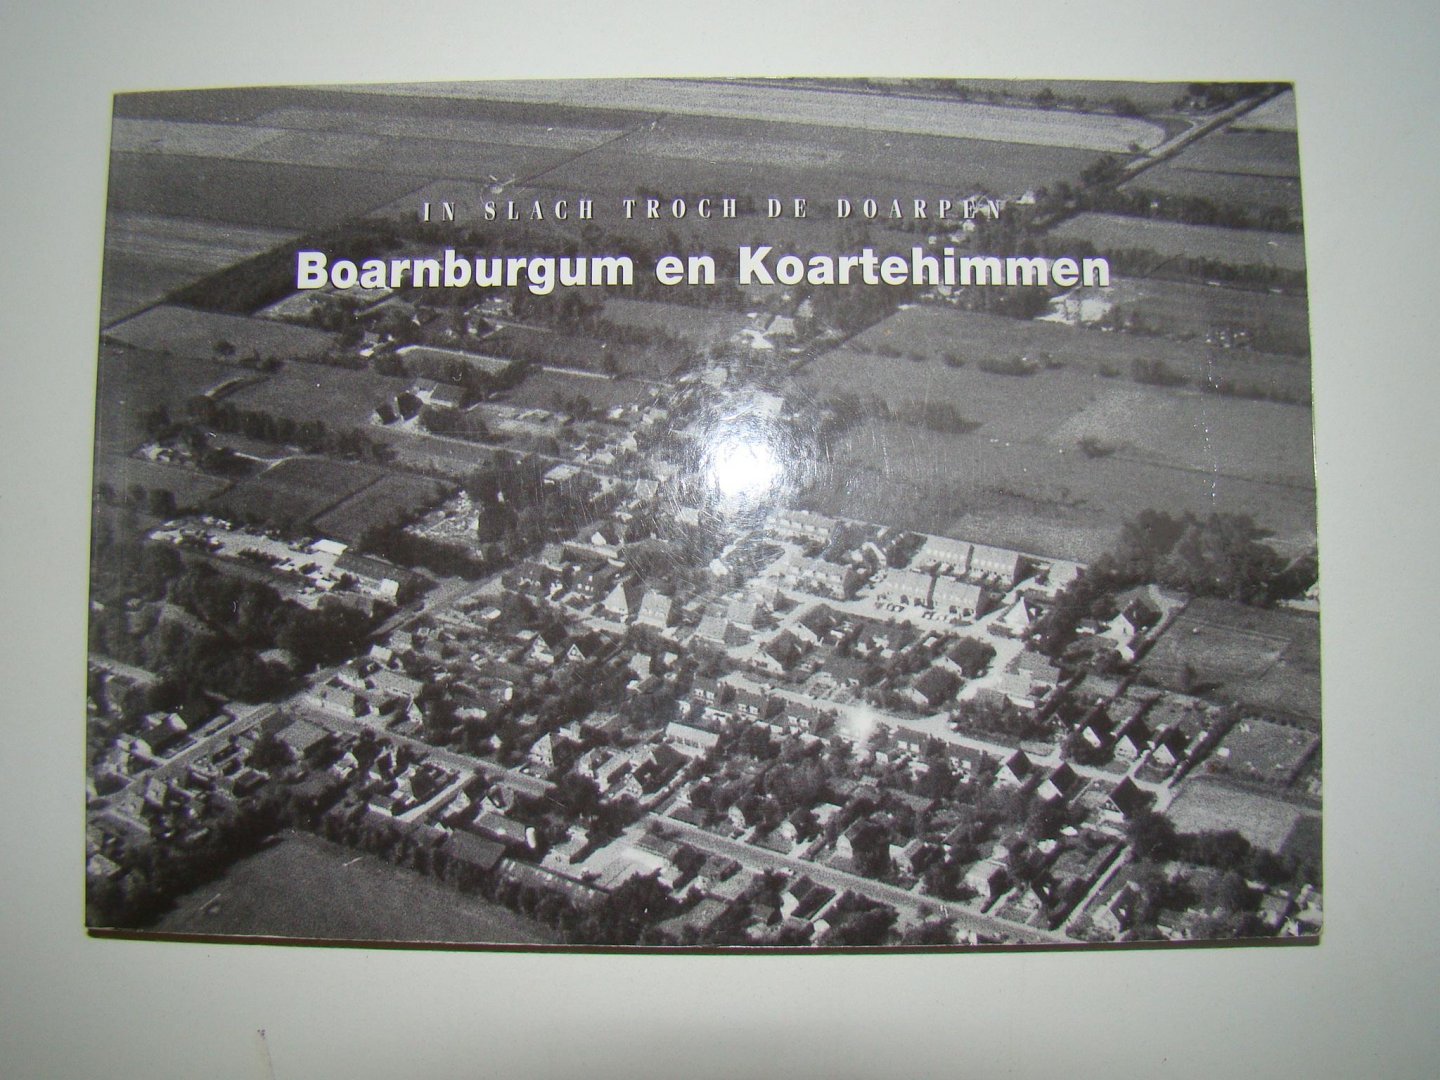 Dijkstra, Jochum - In Slach troch de doarpen Boarnburgum en Koartehimmen